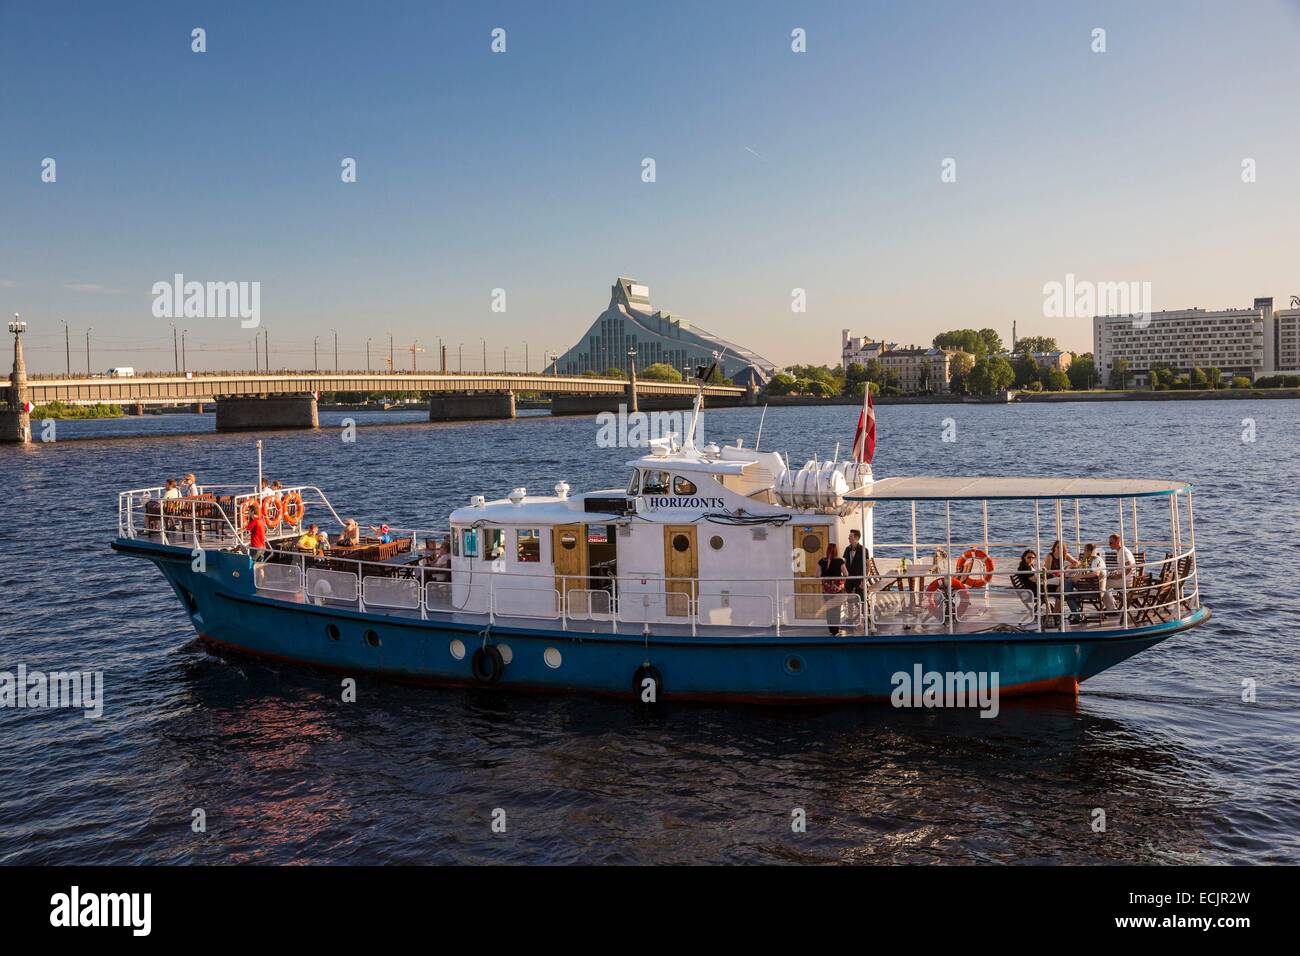 Lettland (Baltikum), Riga, Europäische Kulturhauptstadt 2014 Kreuzfahrtschiff am Fluss Daugava mit Blick auf die Brücke Akmens und der Nationalbibliothek Stockfoto